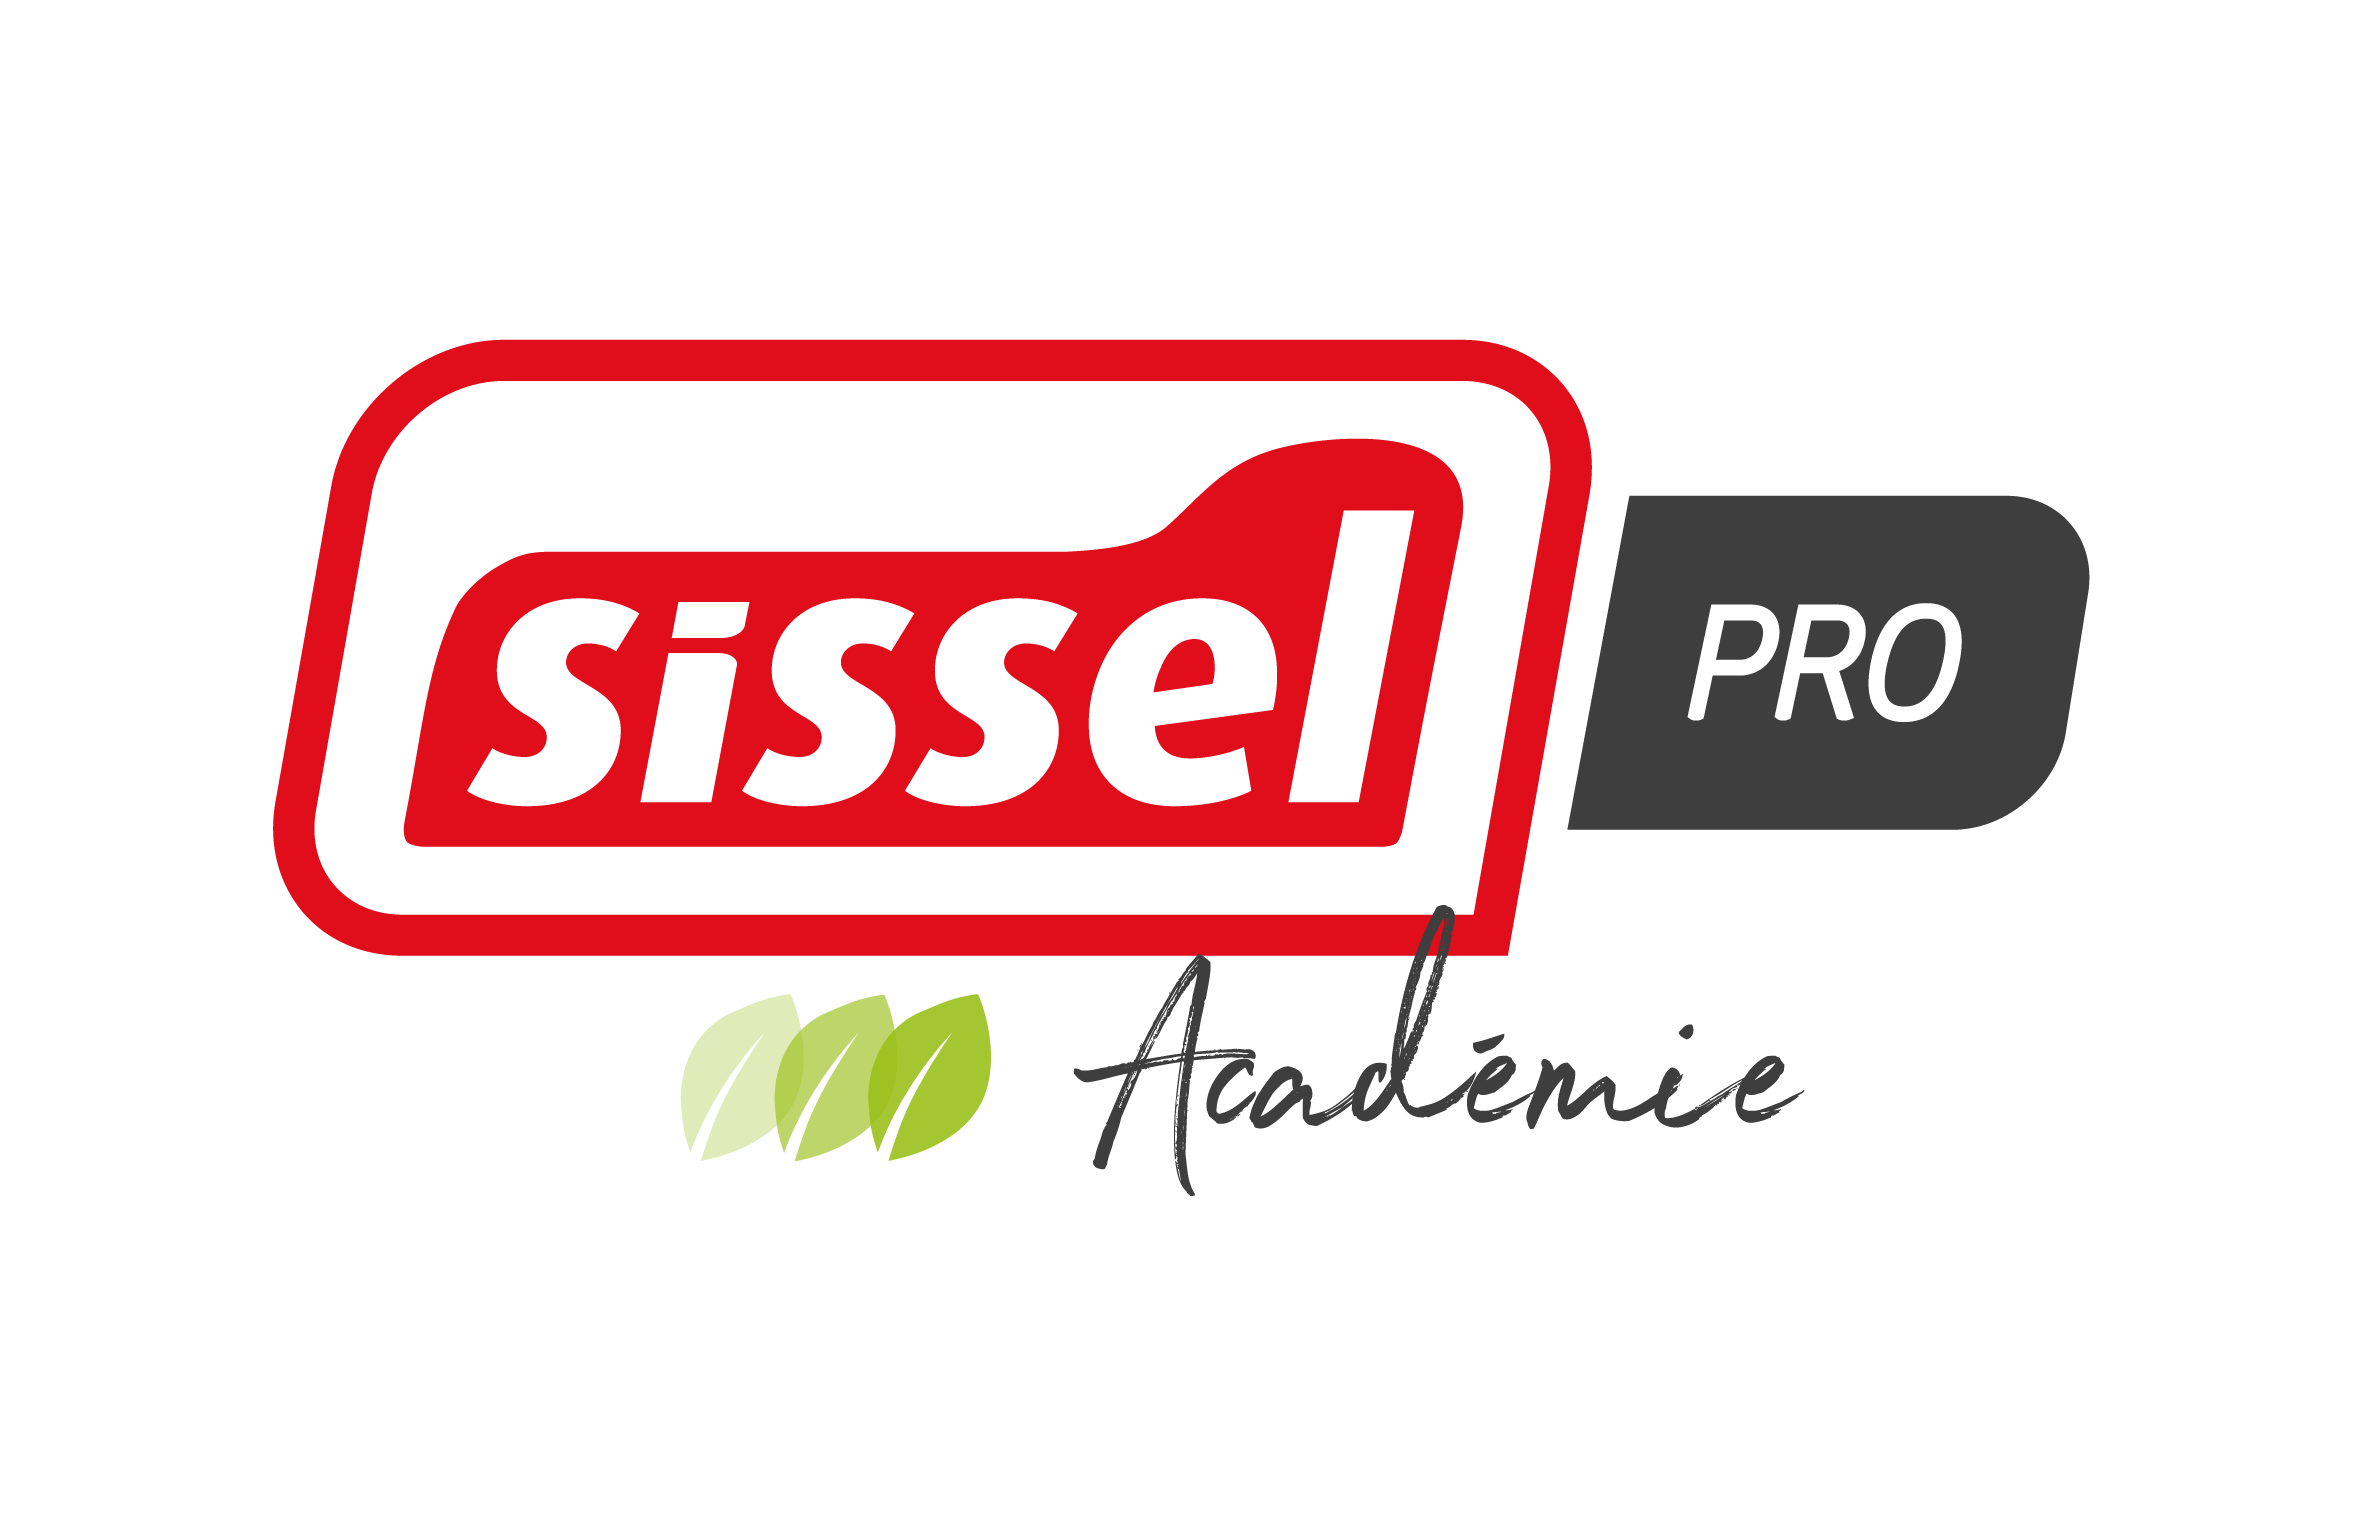 Logo de l'académie SISSEL Pro France